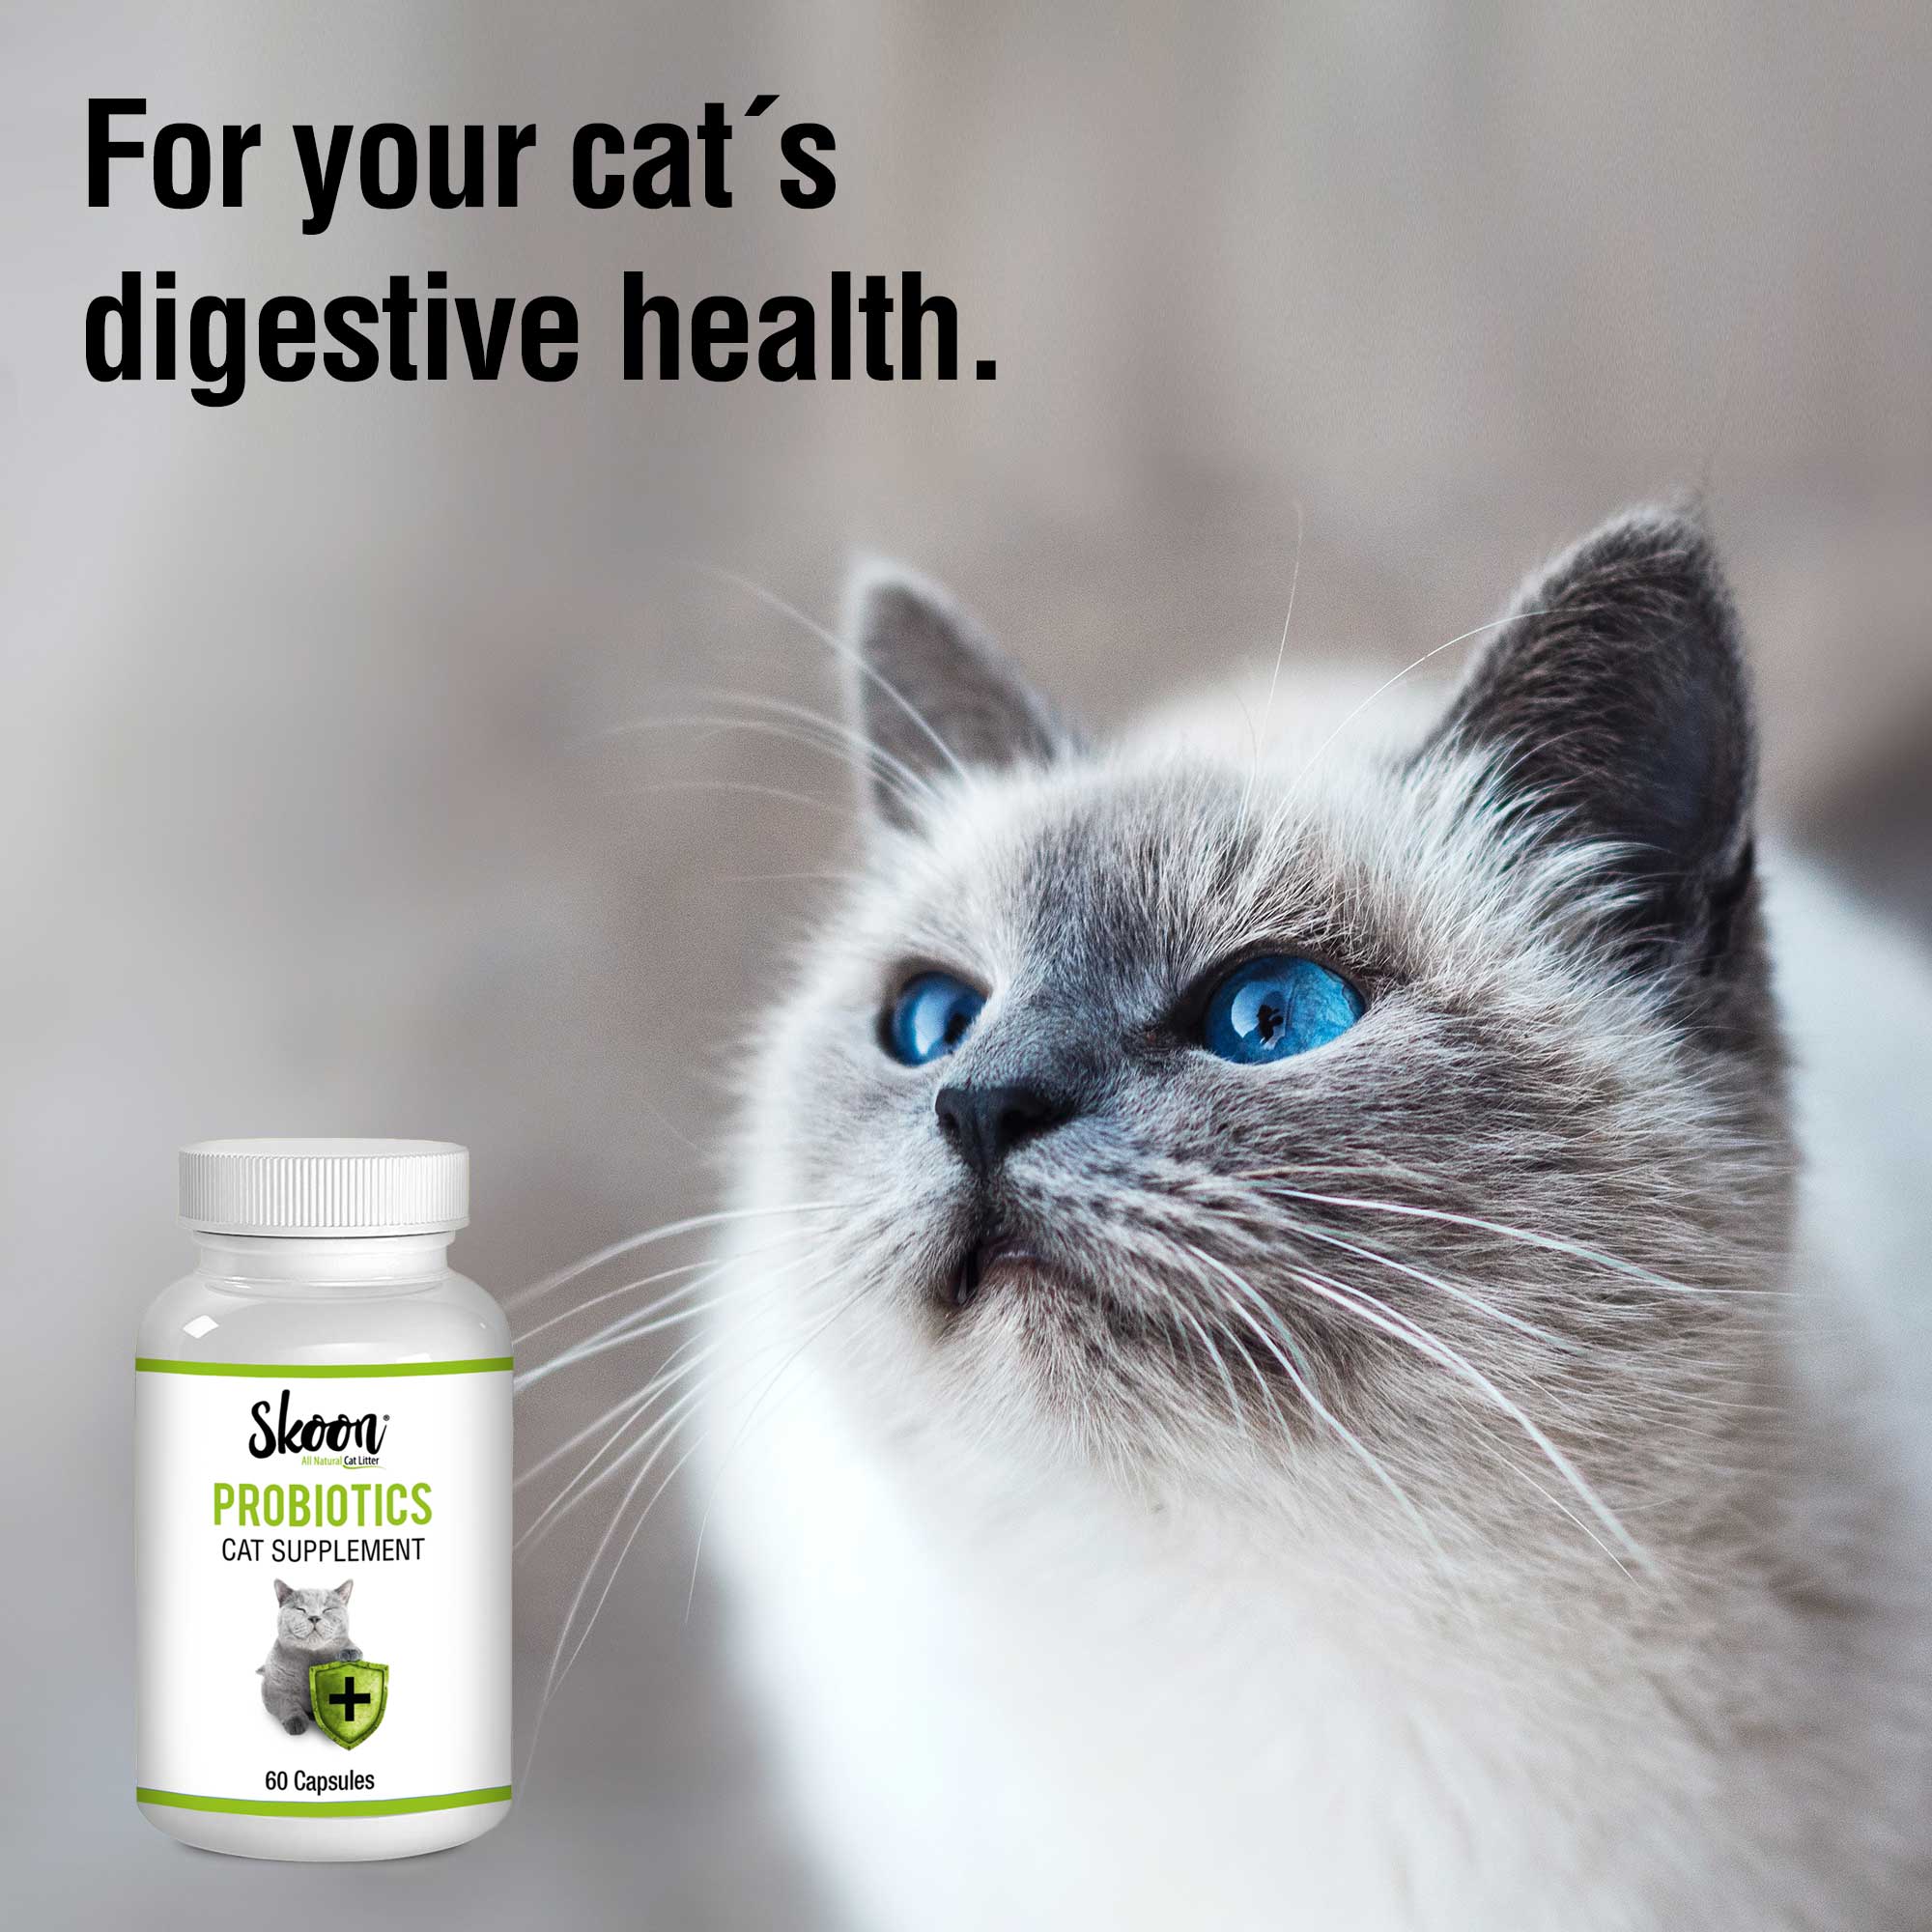 Skoon Cat Probiotics